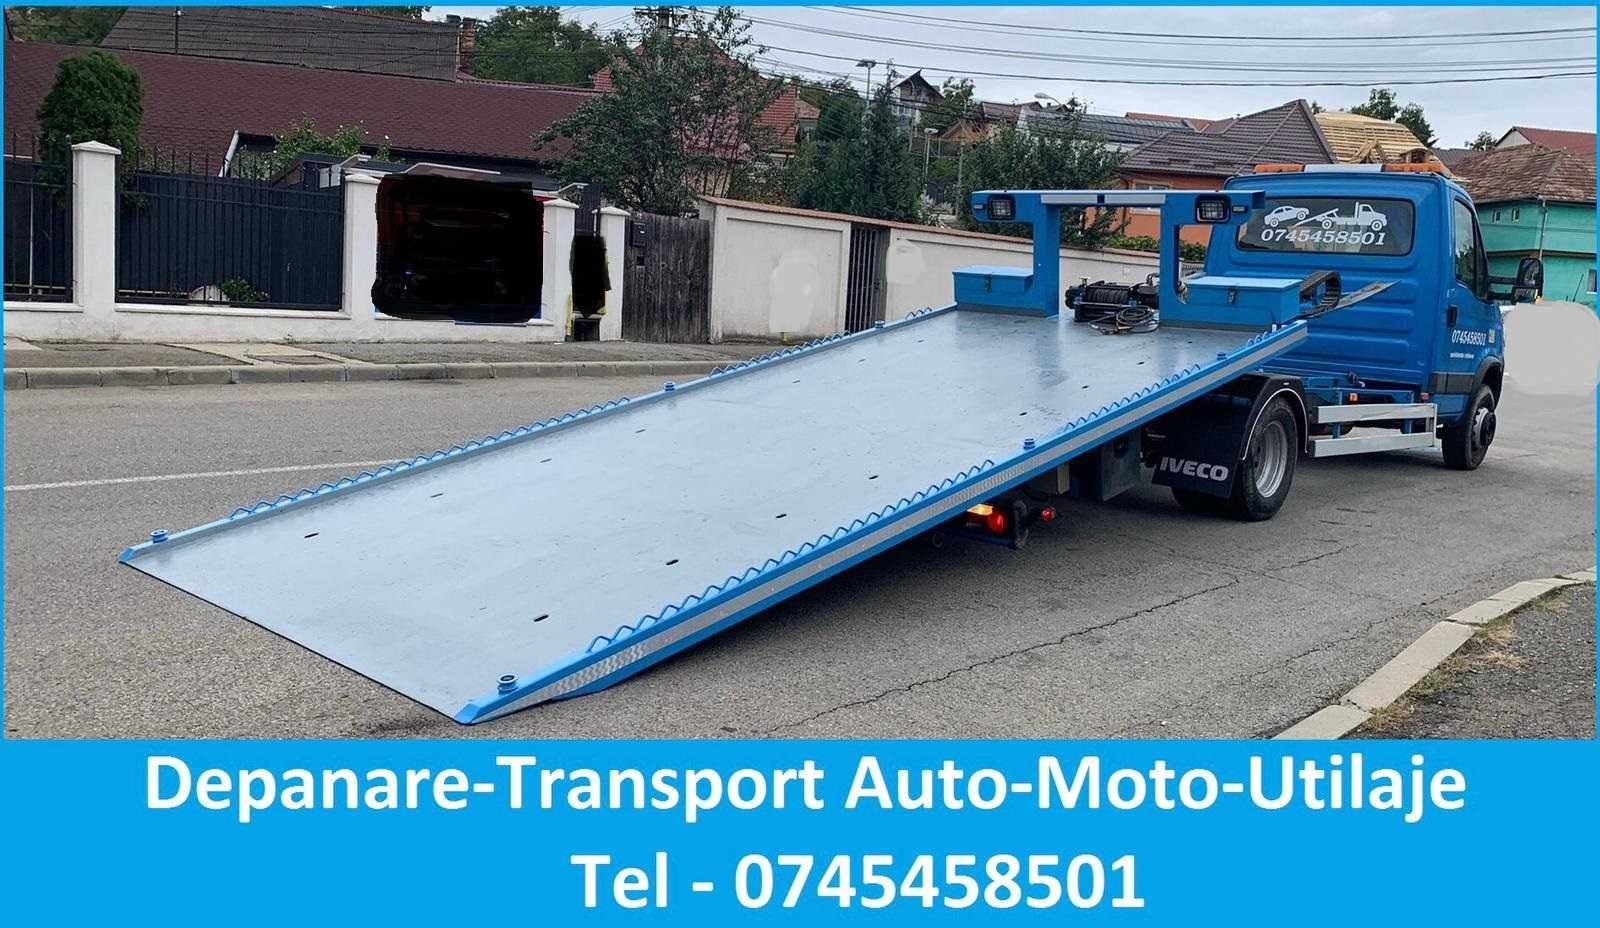 Tractari / Transport  Auto- Moto- Jeep -Suv- Dube -Utilaje